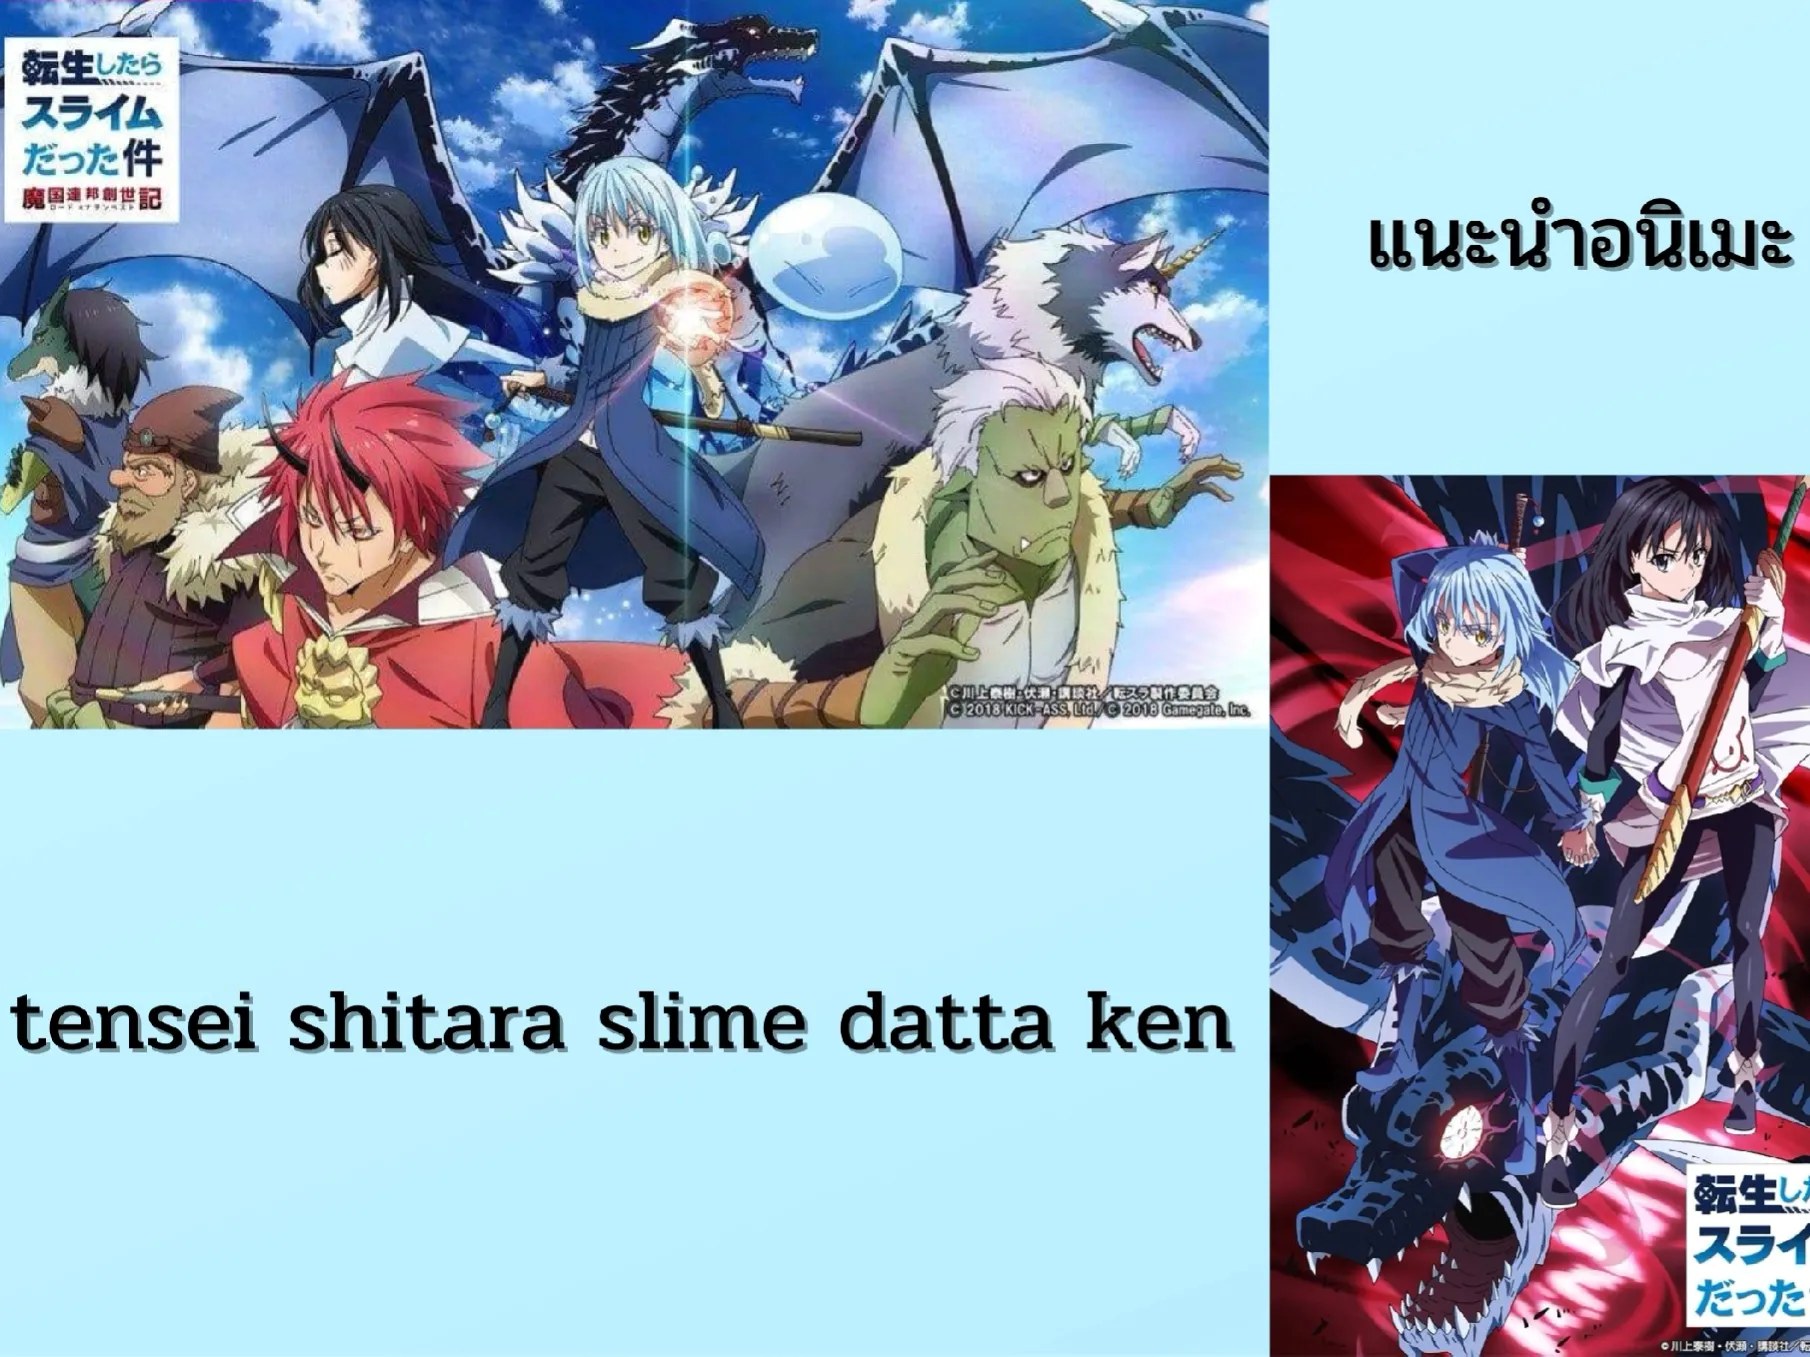 Tensei Shitara Slime Datta Ken - Tensei Shitara Slime Datta Ken Season 2  Key Visual Art